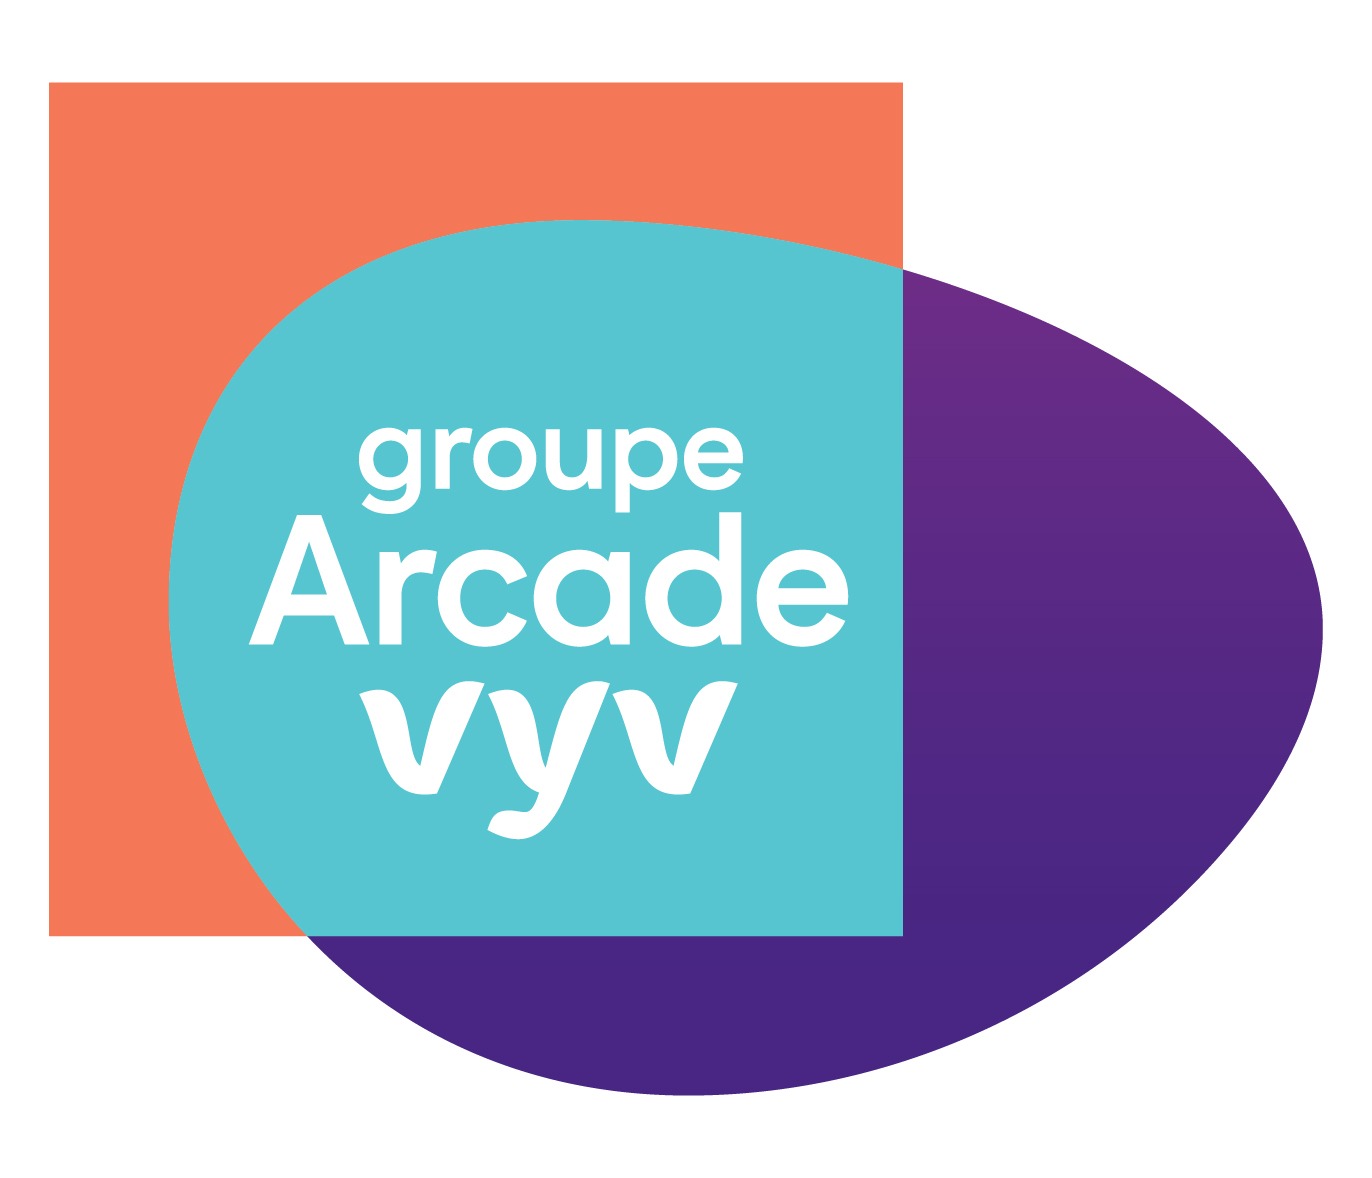 Logo Arcade-VYV